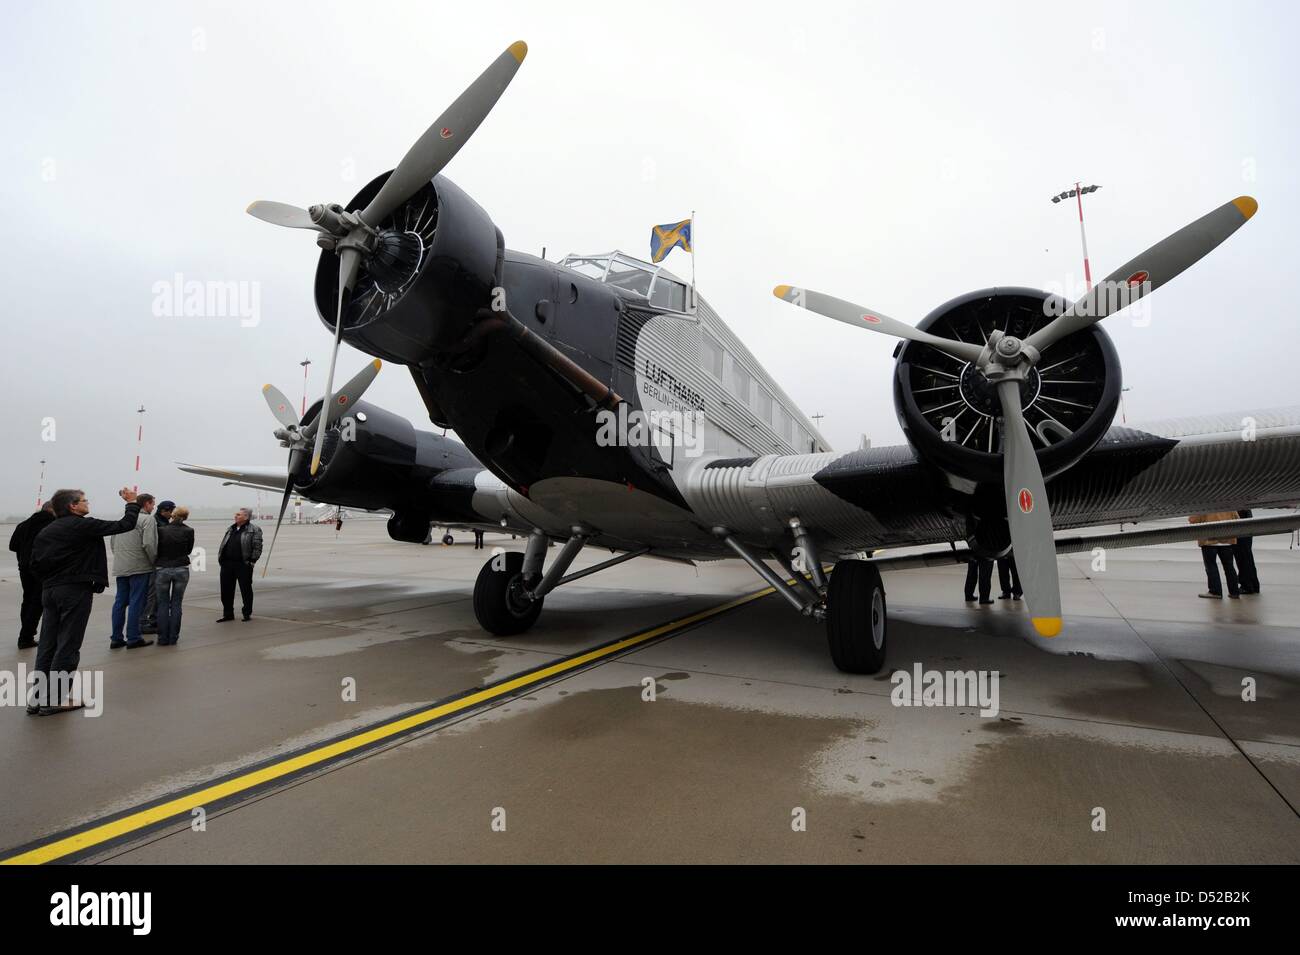 L'avion Junkers Ju 52 de Lufthansa est sur la piste de l'aéroport de Hambourg, Allemagne, 31 octobre 2010. Le 74-year-old 'Grand Madame" de Lufthansa laisse maintenant pour la pause d'hiver. Depuis 1986, le dinosaure volant prend jusqu'à 10 000 personnes nostalgique d'un voyage dans l'air. Photo : Maurizio Gambardini Banque D'Images